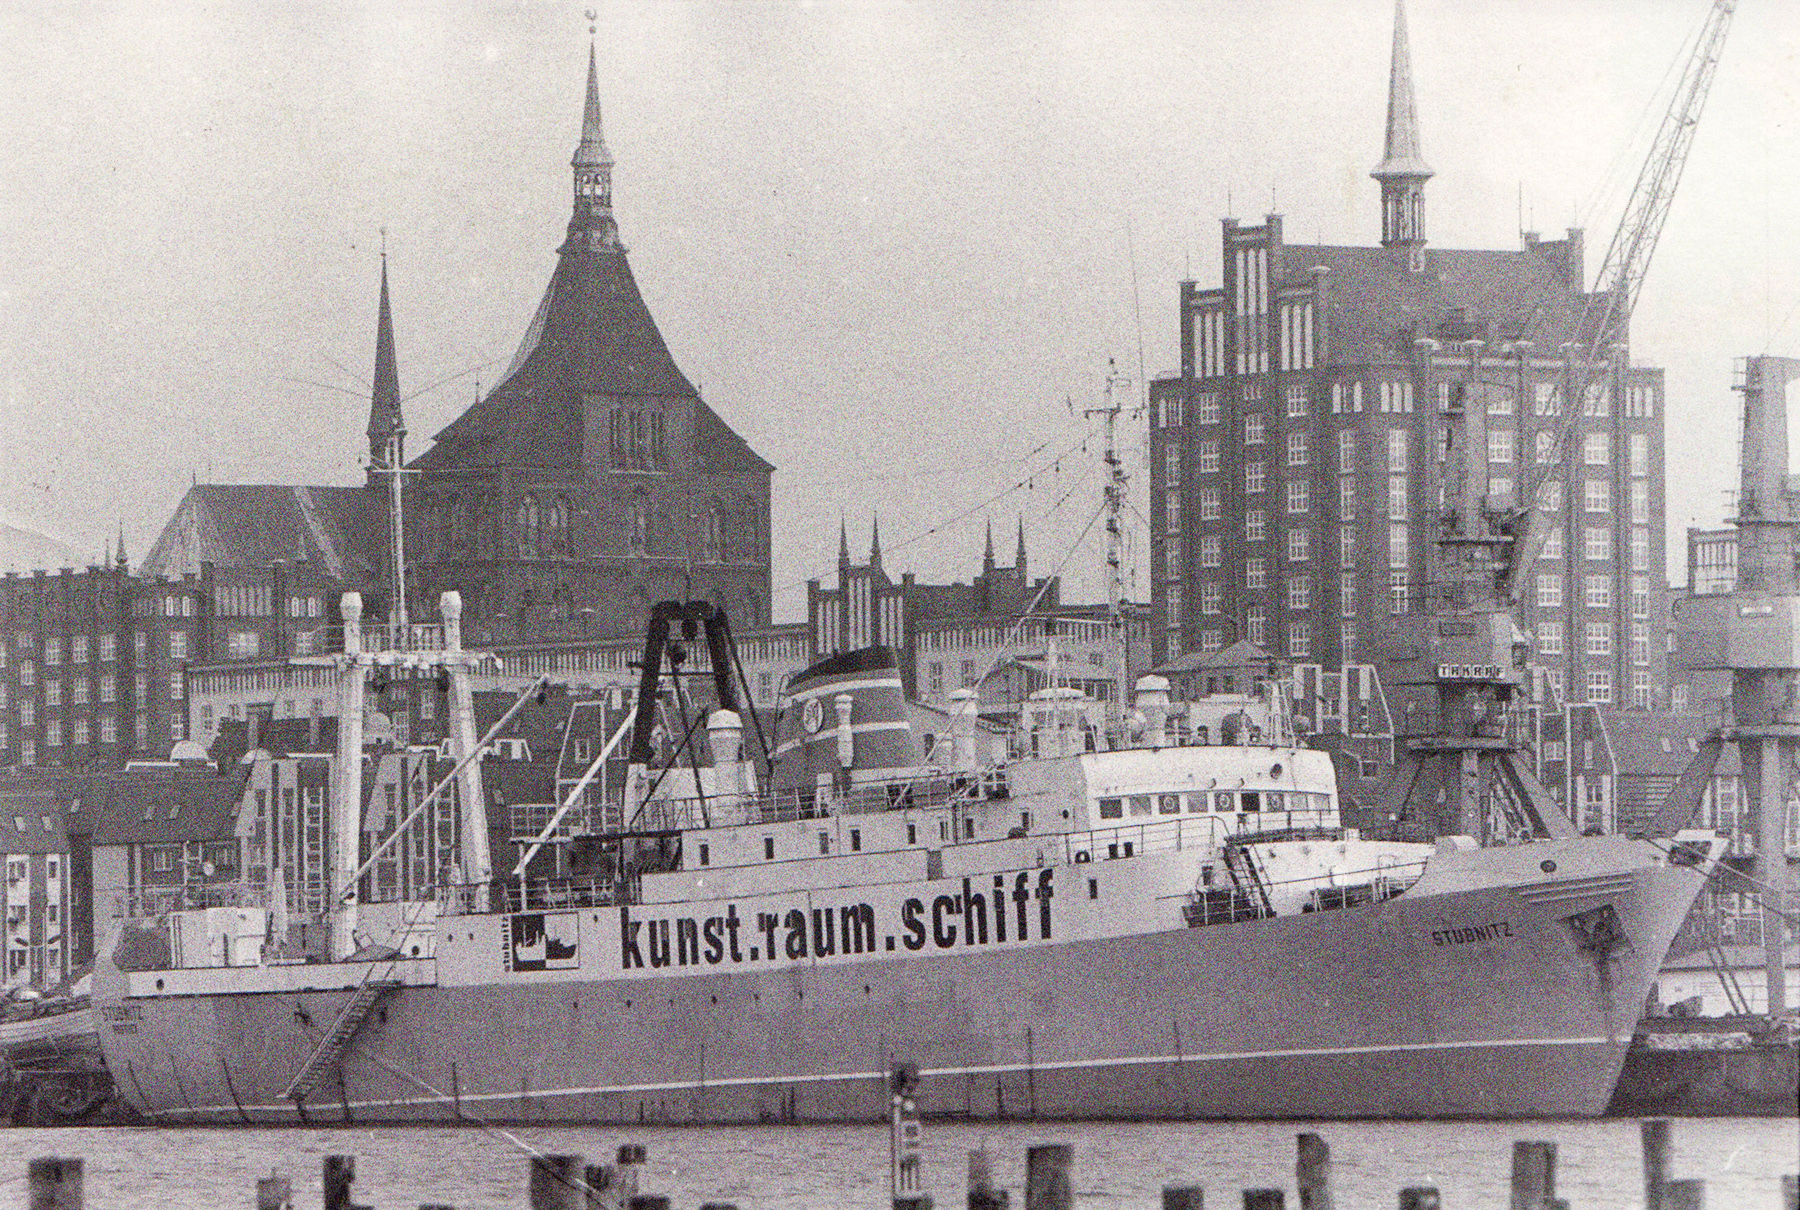 Stubnitz in Rostock 1993. Aufschrift auf der Schiffsseite "kunst.raum.schiff". Im Hintergrund Backsteingebäude.